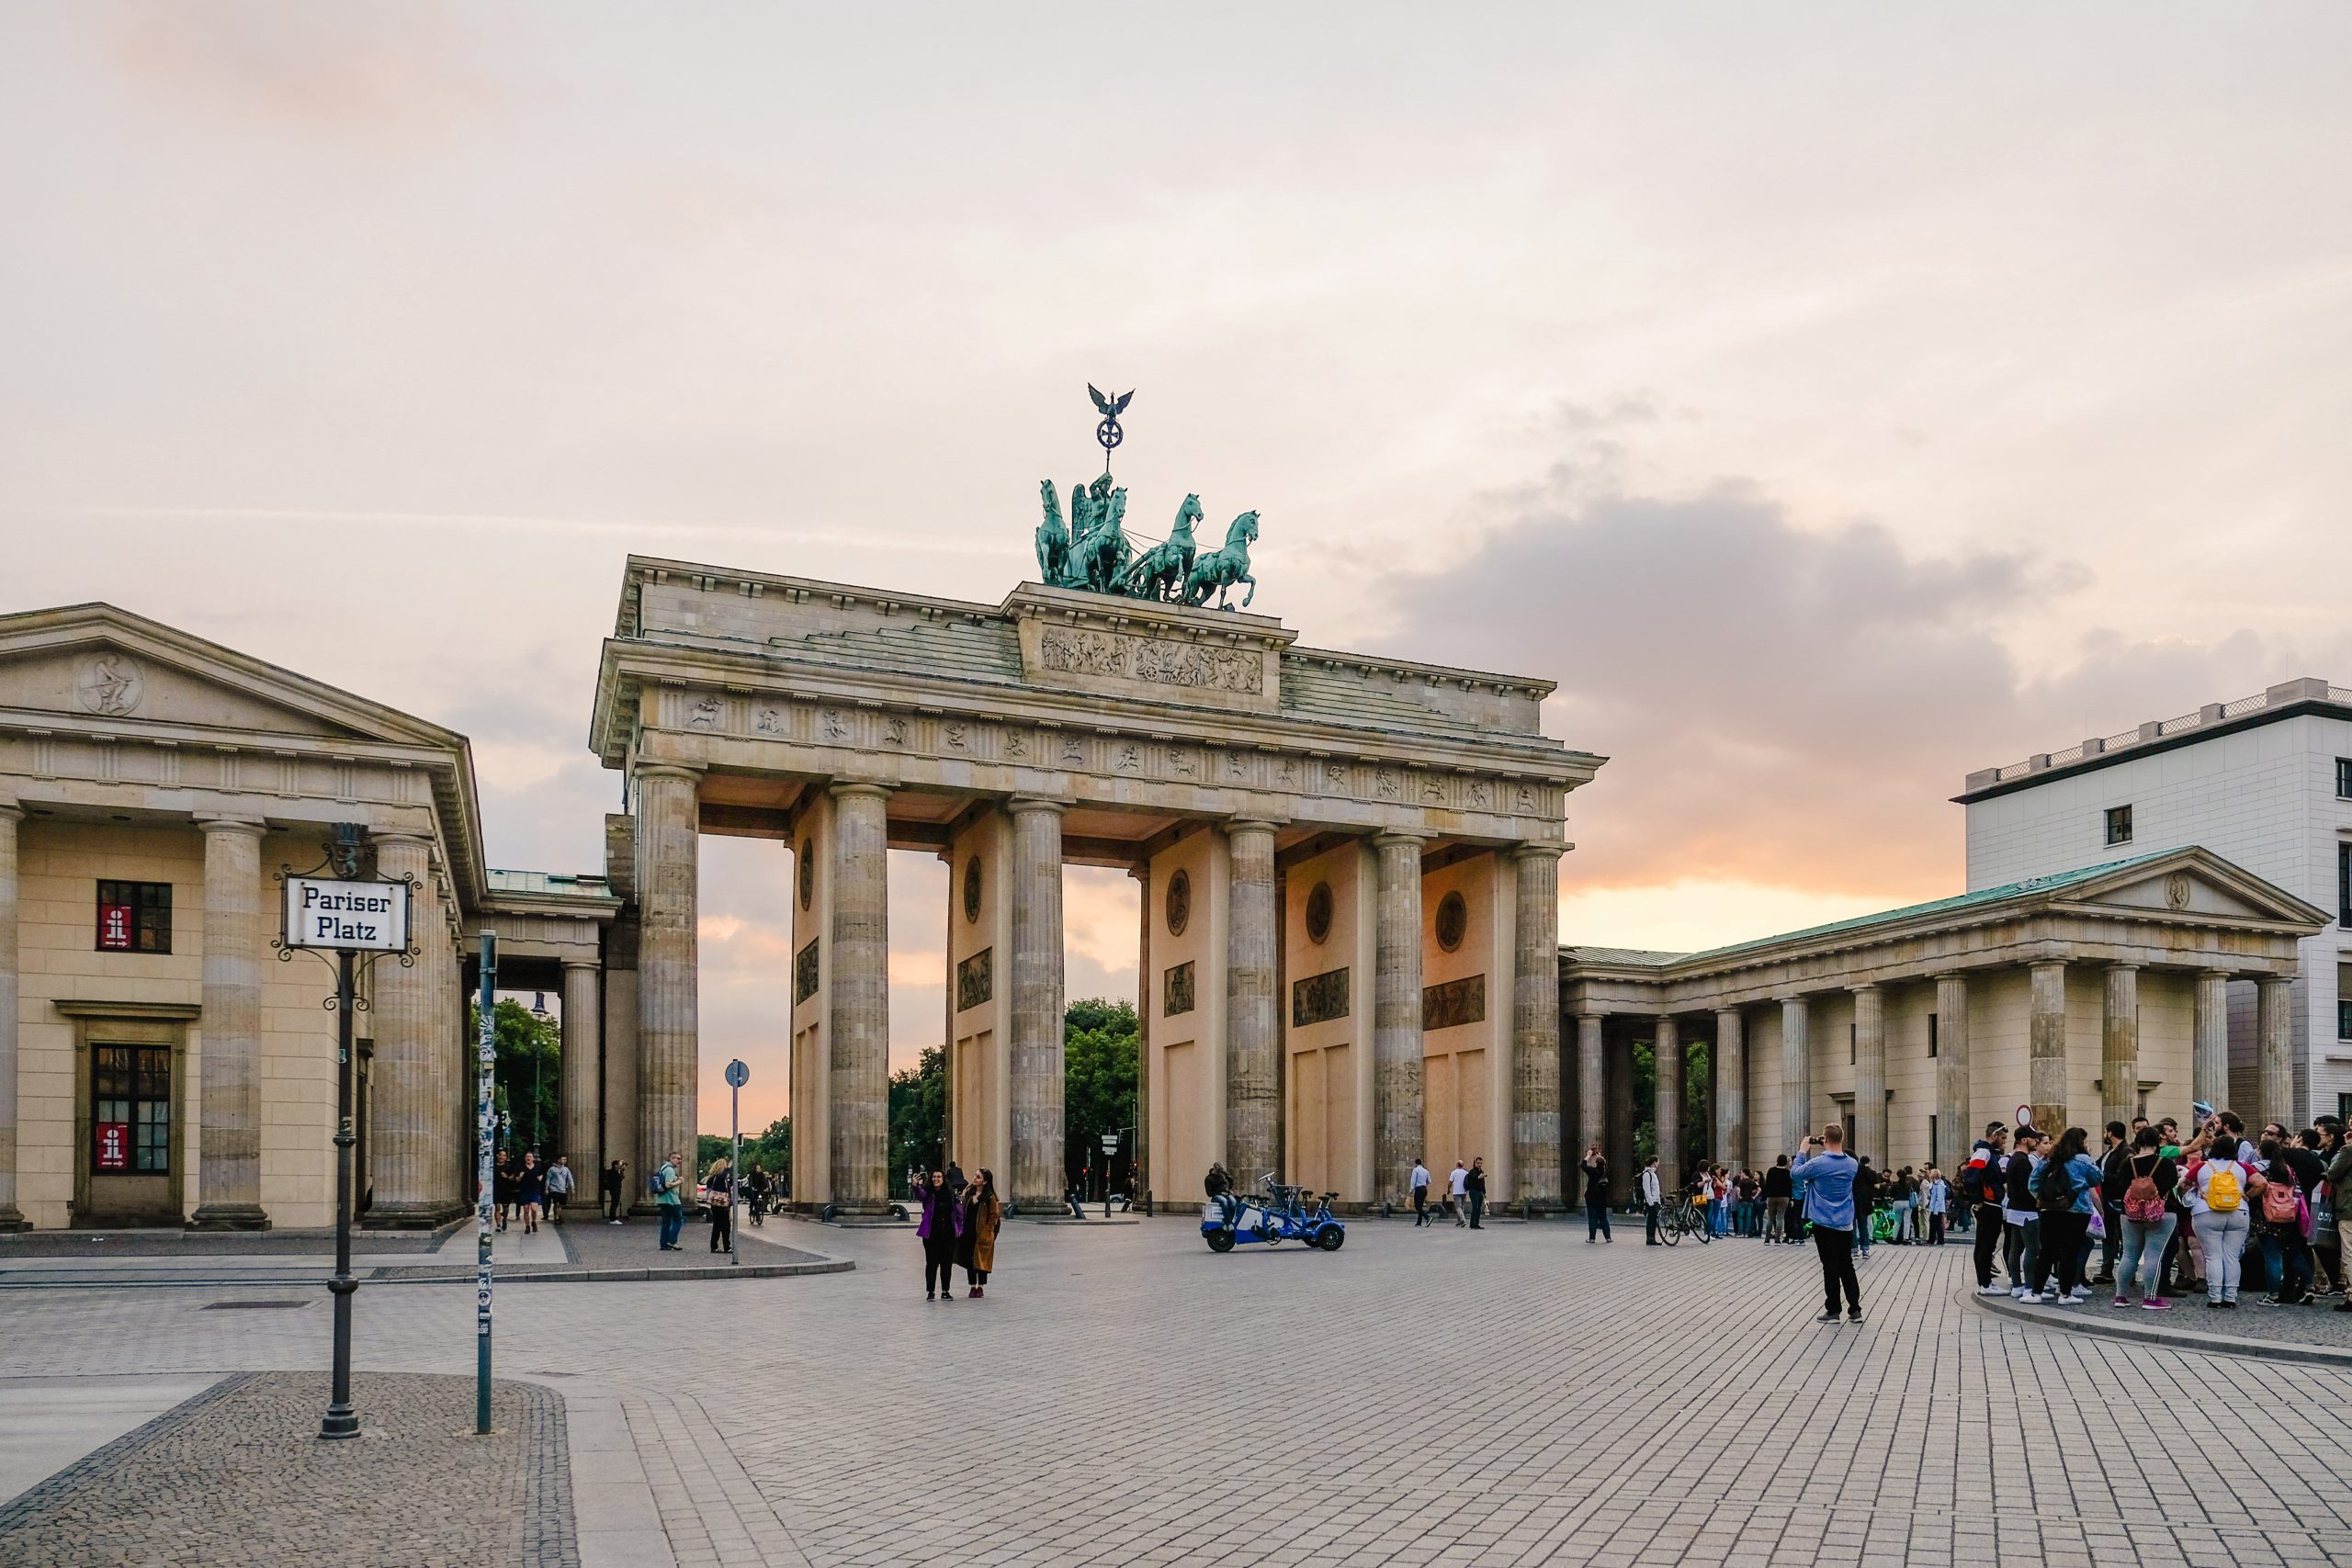 Sehenswürdigkeiten – die beliebtesten Attraktionen in Berlin